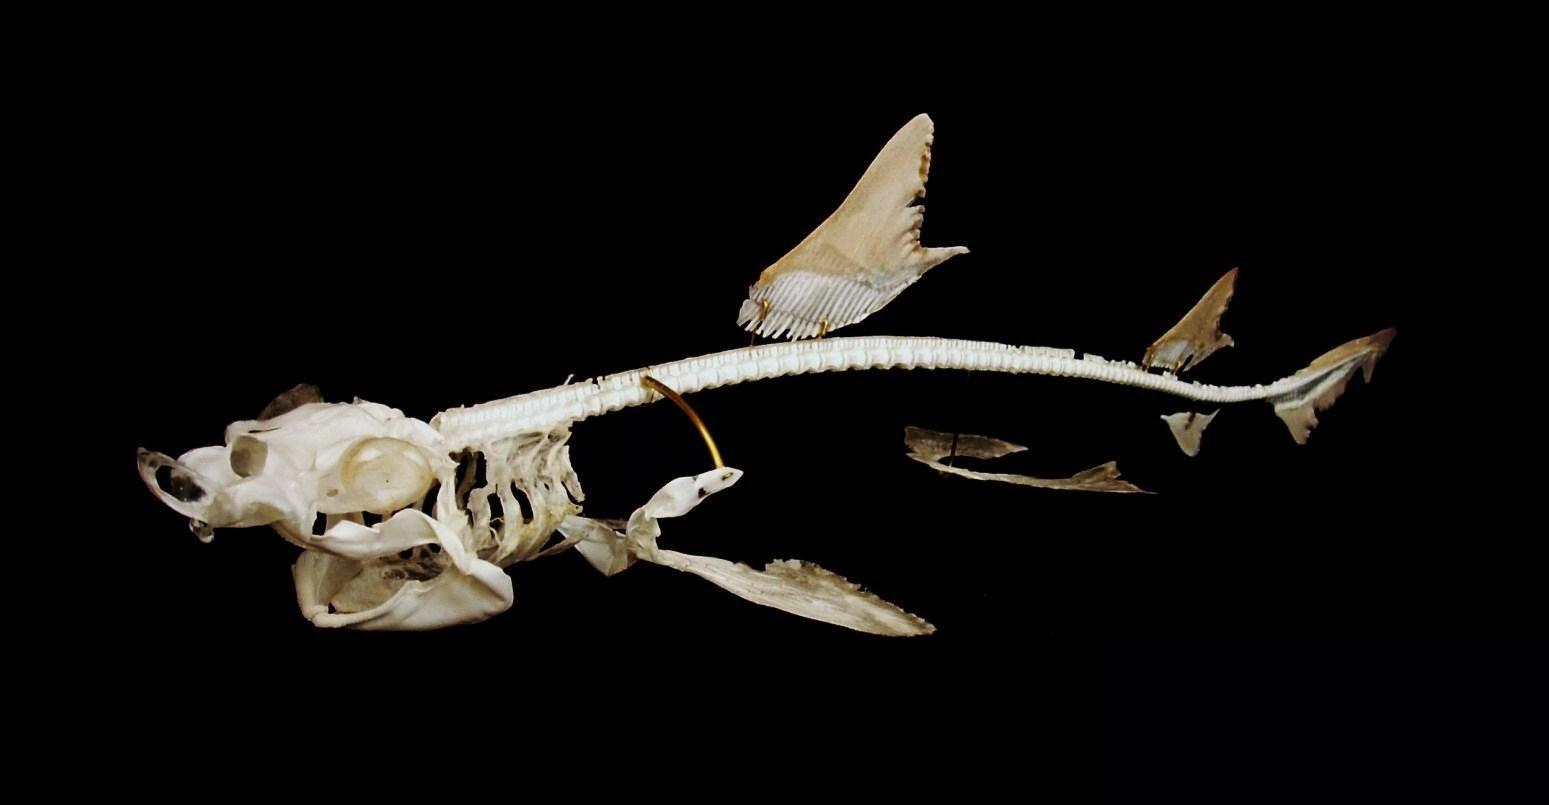 大白鲨骨骼-图库-五毛网